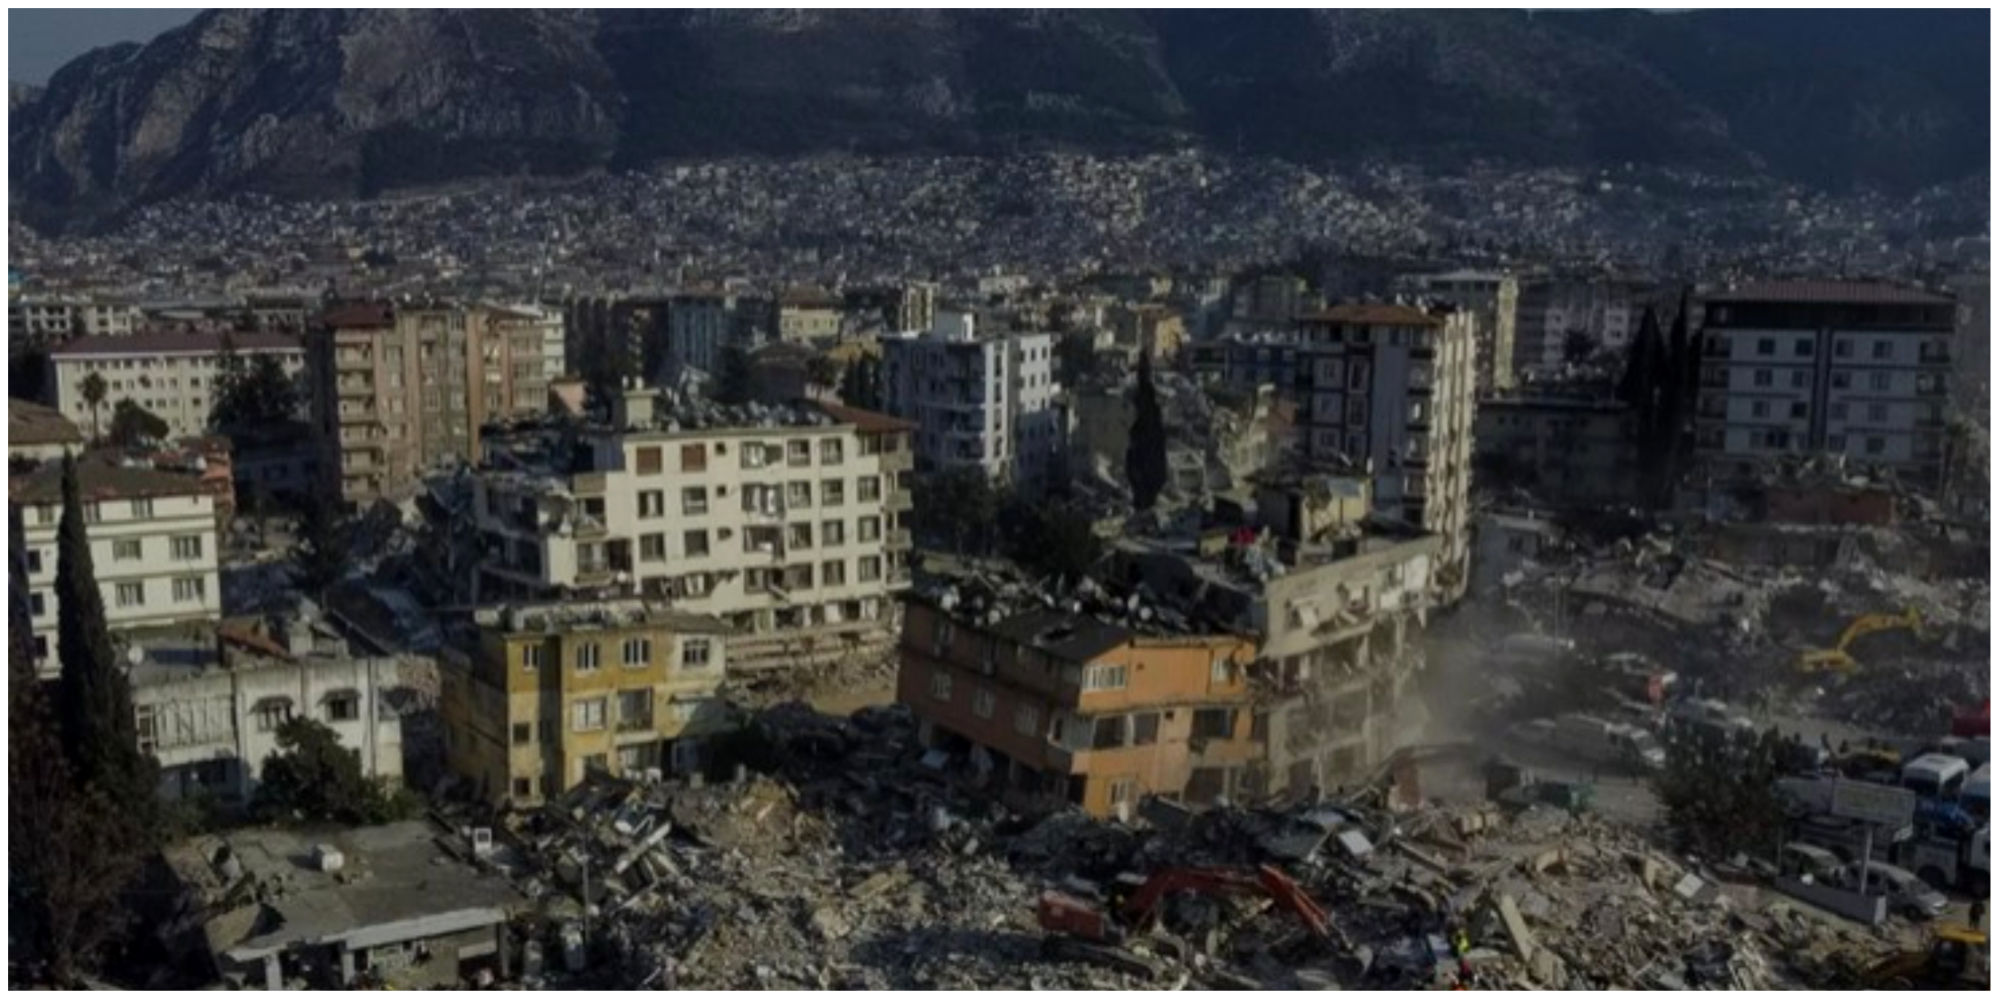 این شهر بر اثر زلزله ترکیه کاملا تخریب شد